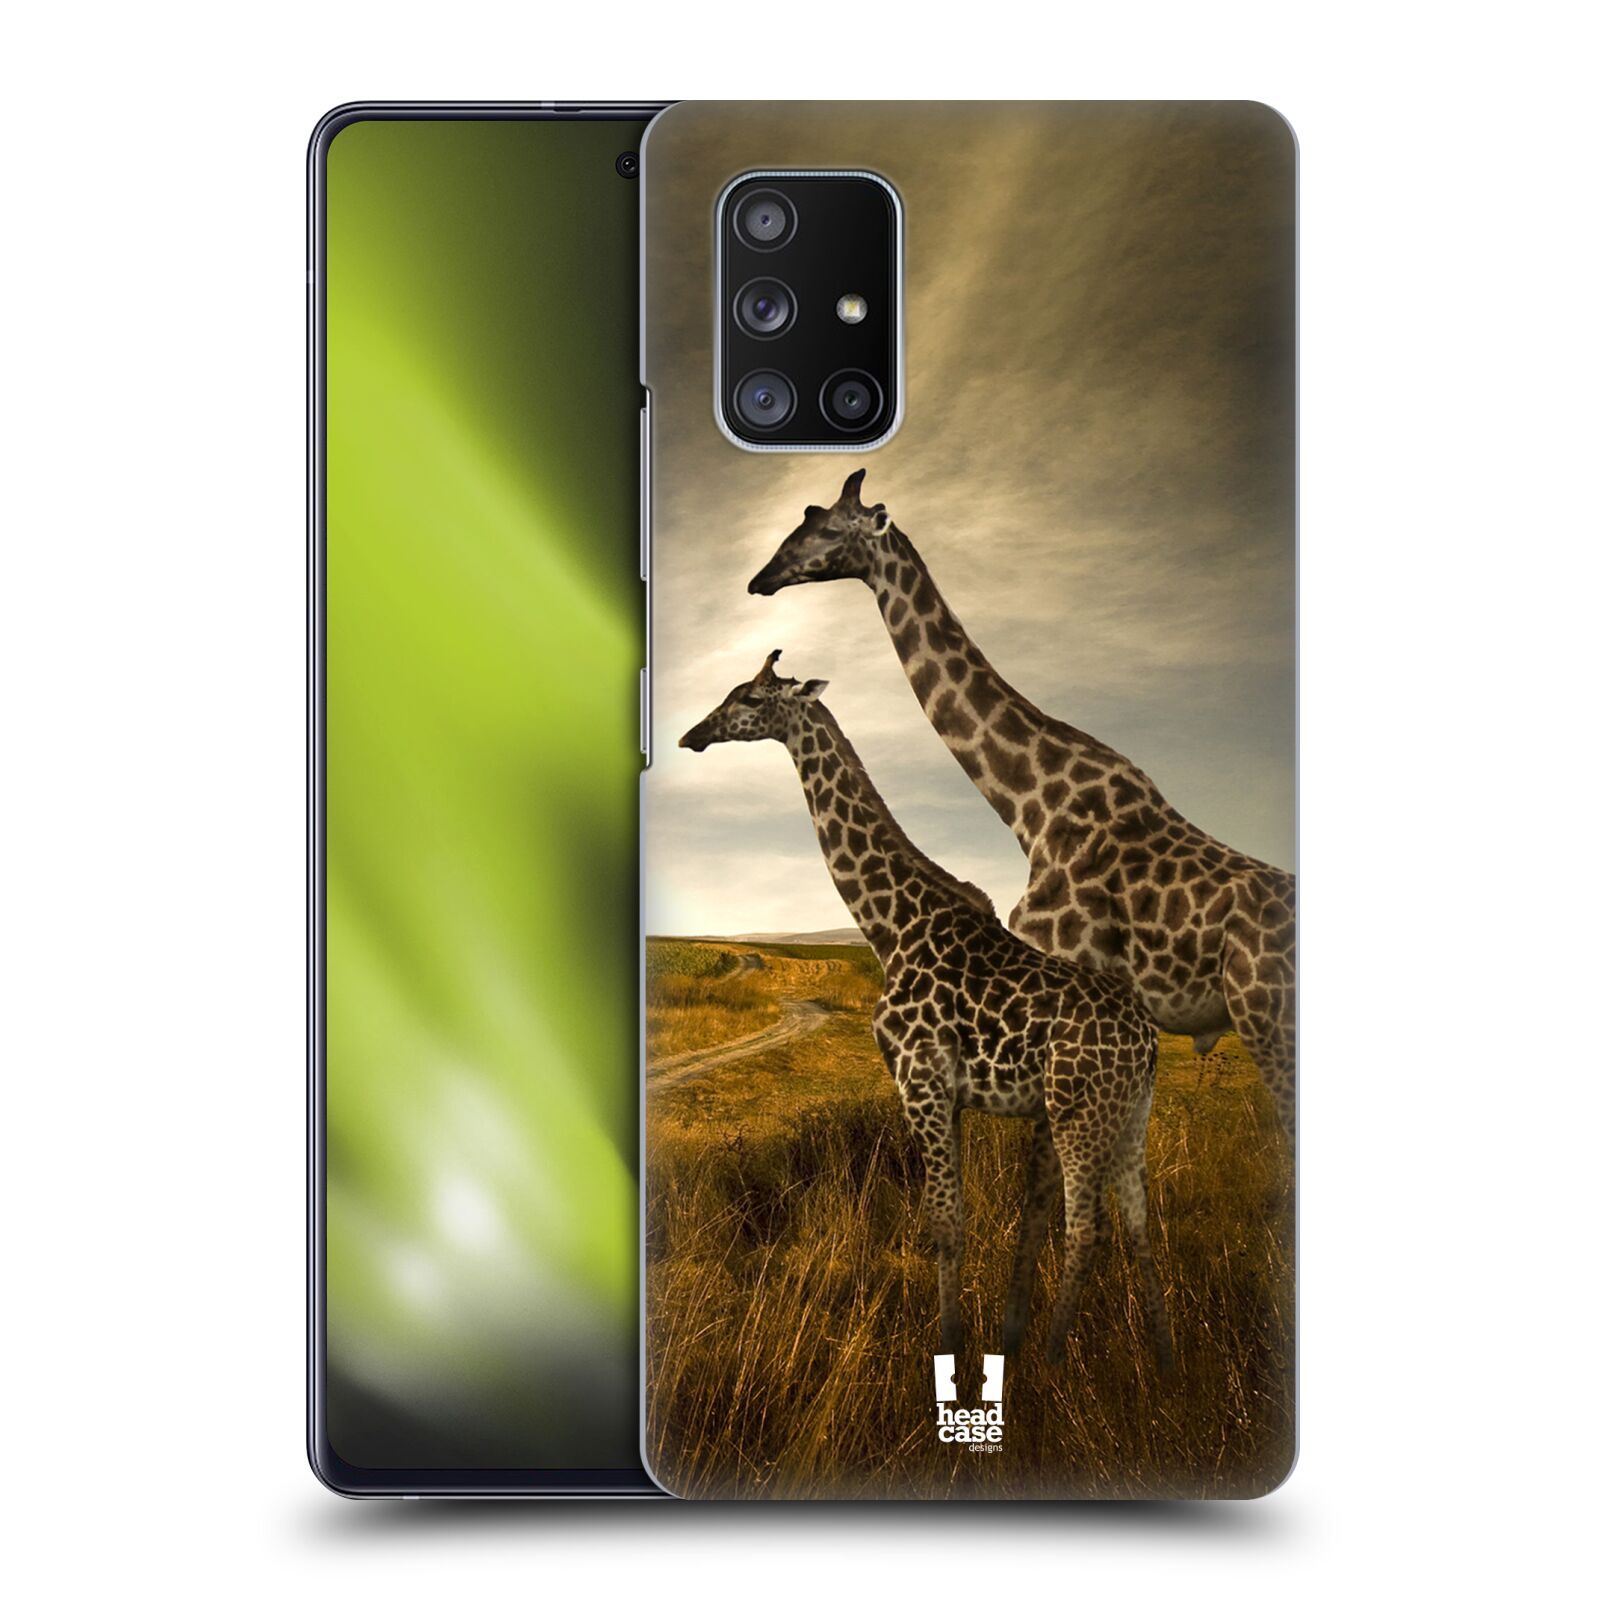 Zadní obal pro mobil Samsung Galaxy A51 5G - HEAD CASE - Svět zvířat žirafy